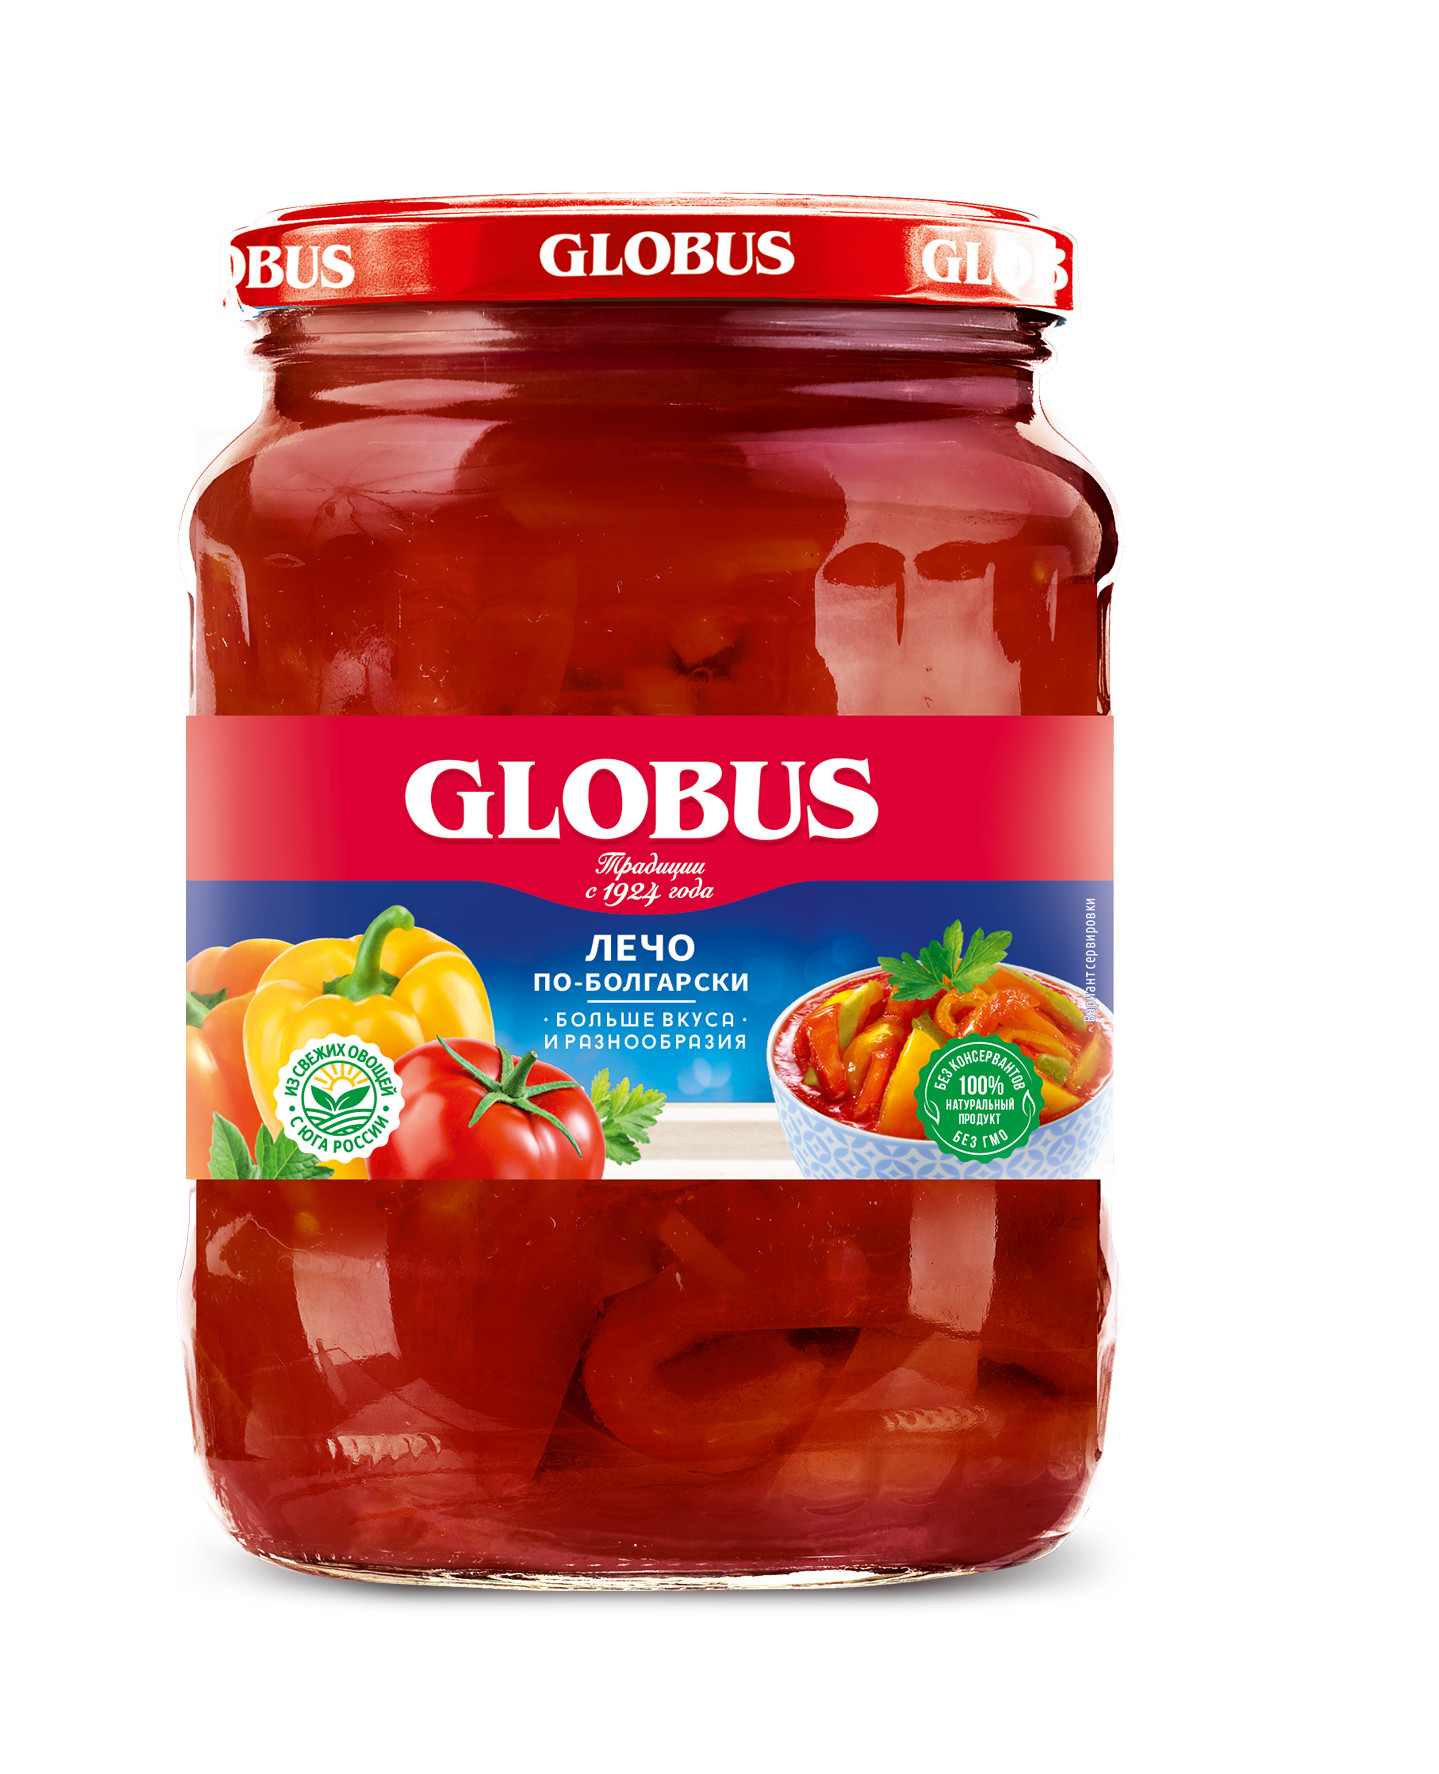 Лечо Globus по-болгарски 680 г. Globus лечо по-болгарски. Лечо Globus натуральное, 680 г. Консервы Глобус лечо. Сайт банку глобус